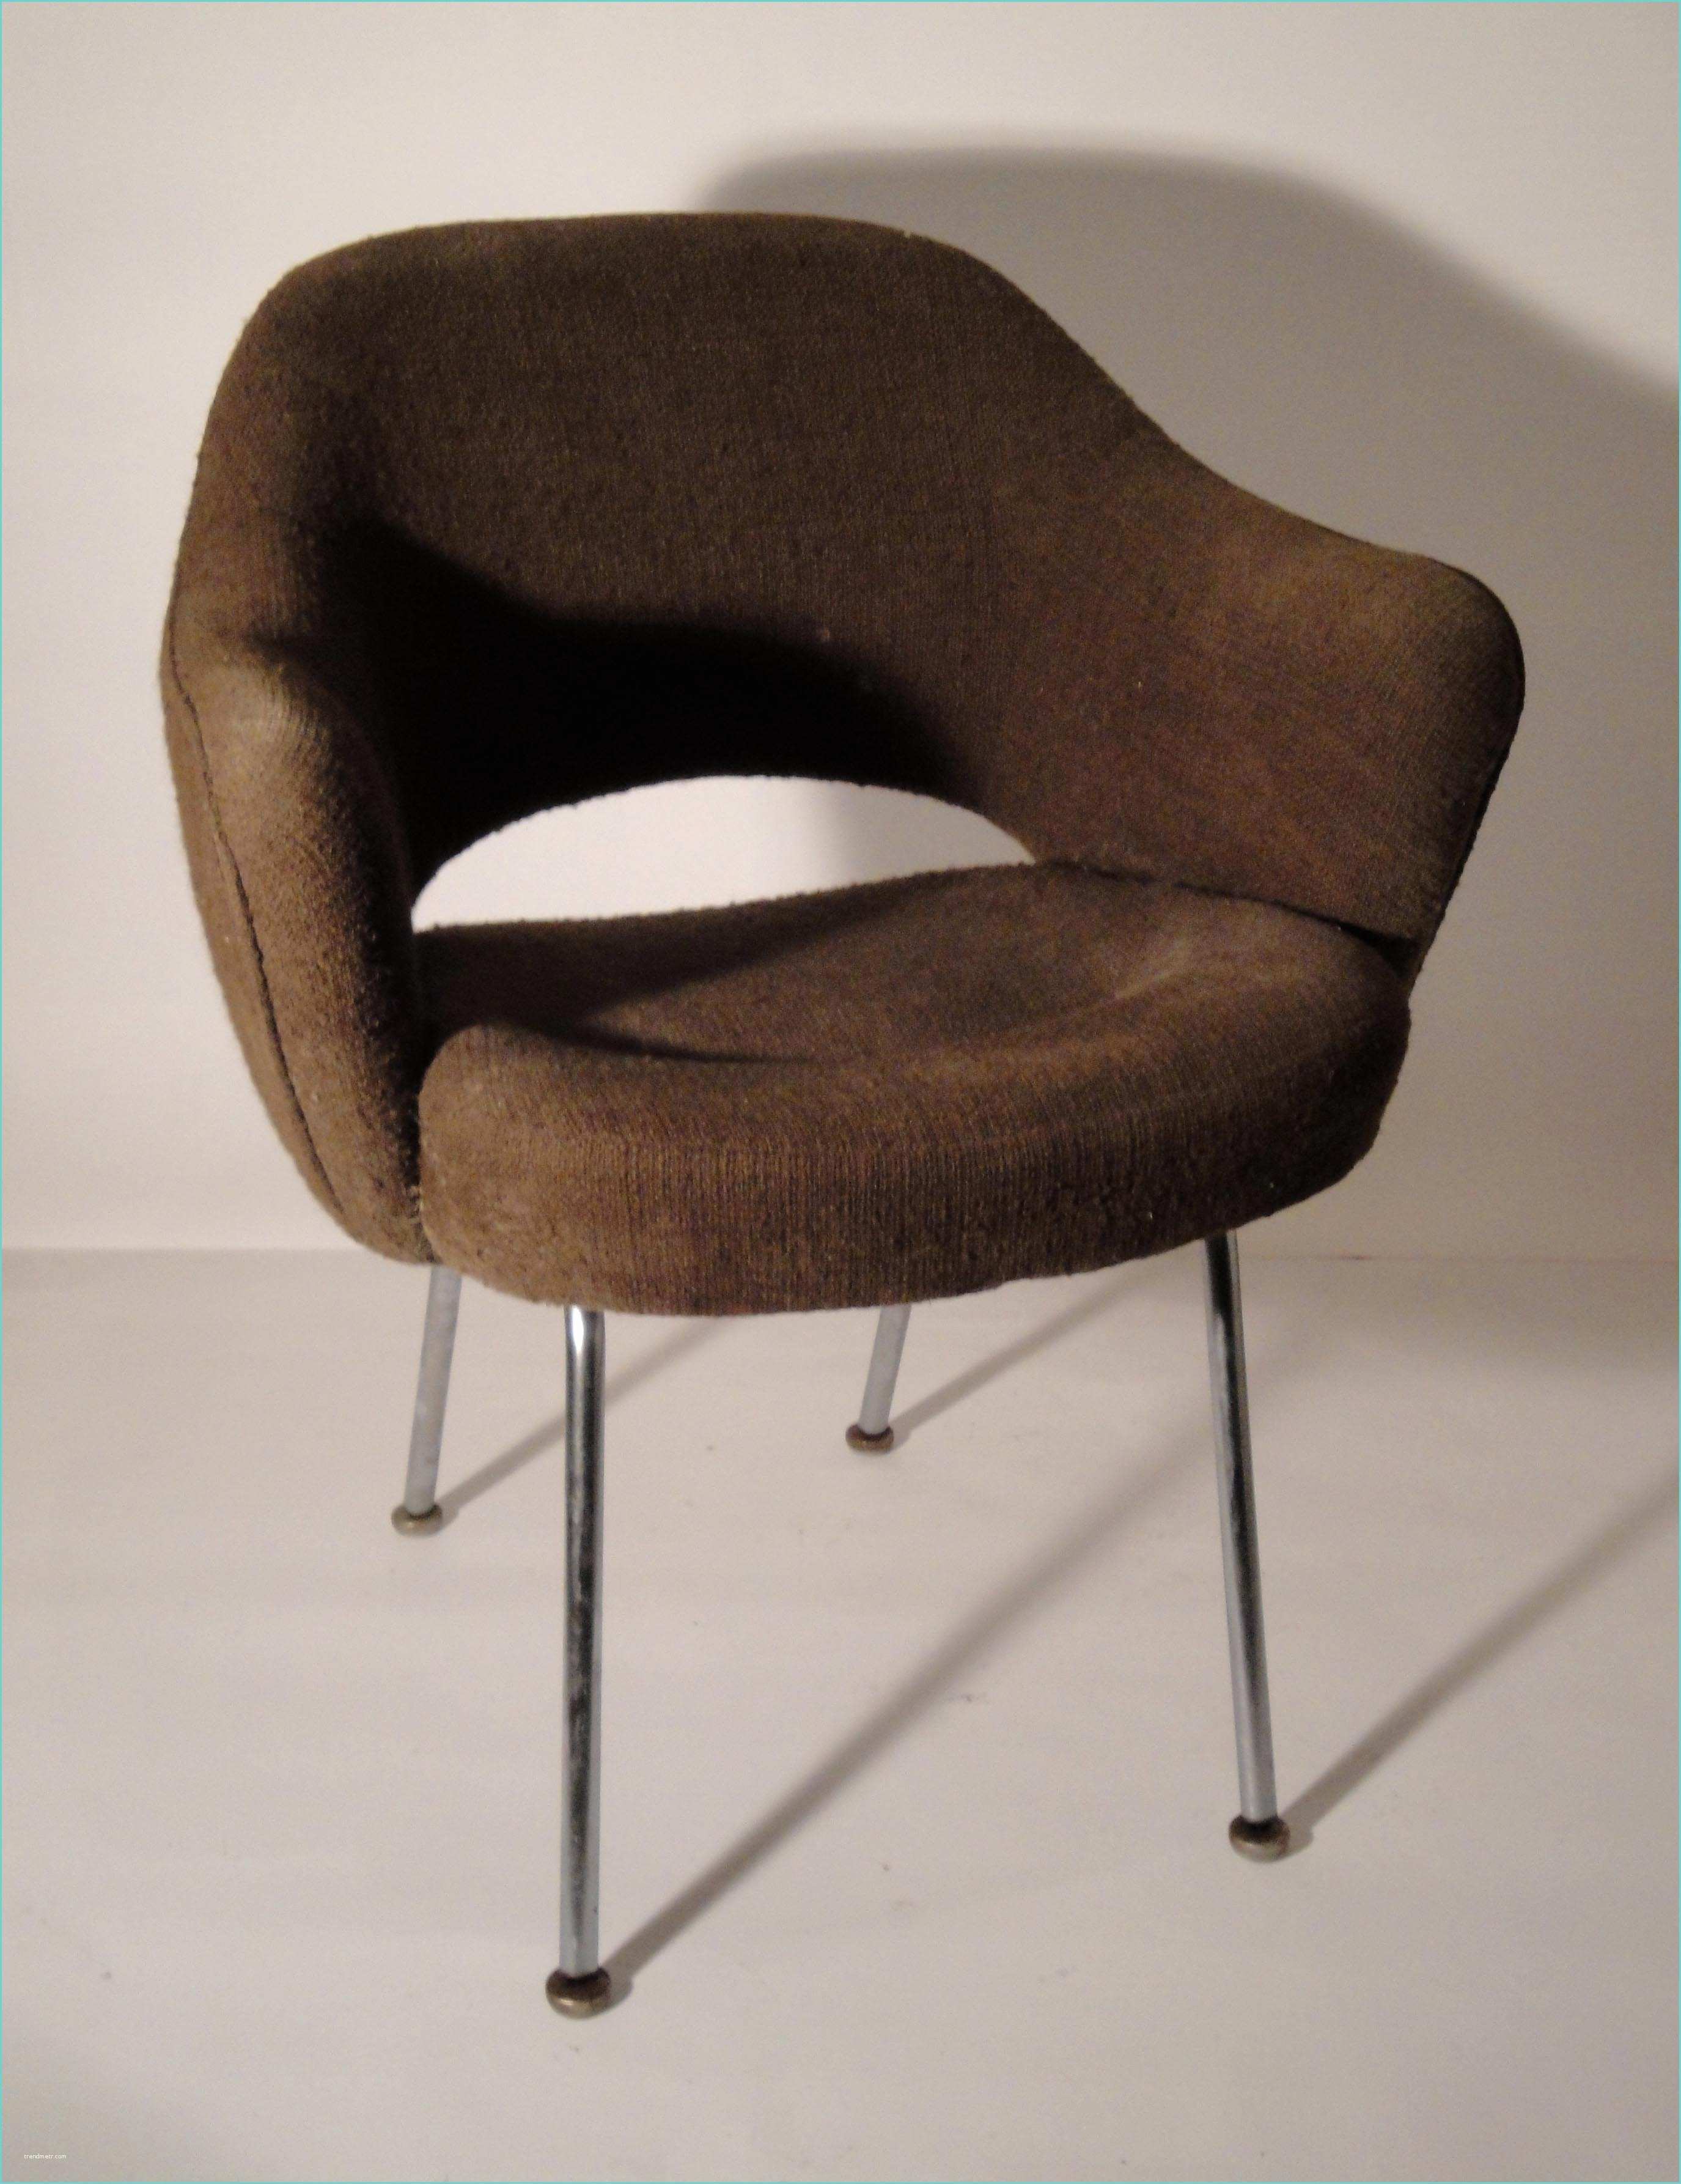 Fauteuil De Bureau Knoll Des Chaises Design Vintage Des Années 1950 à 80 De